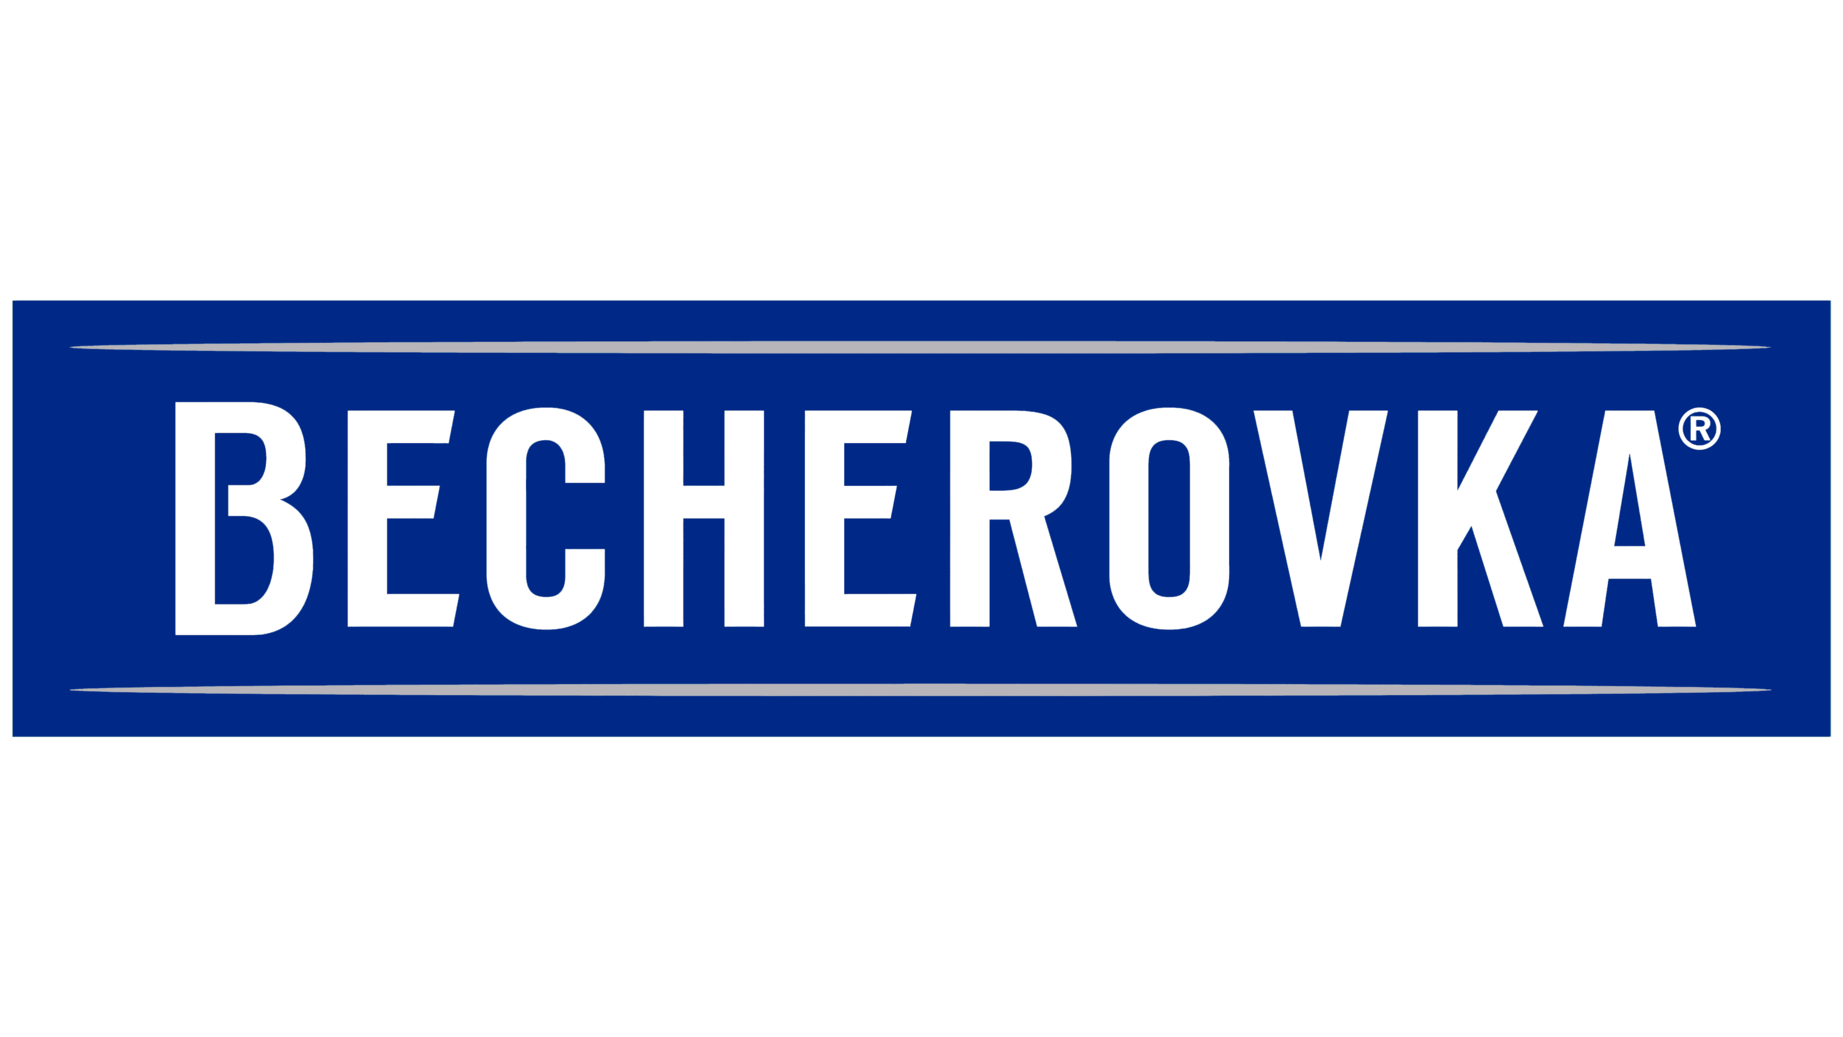 Becherovka symbol